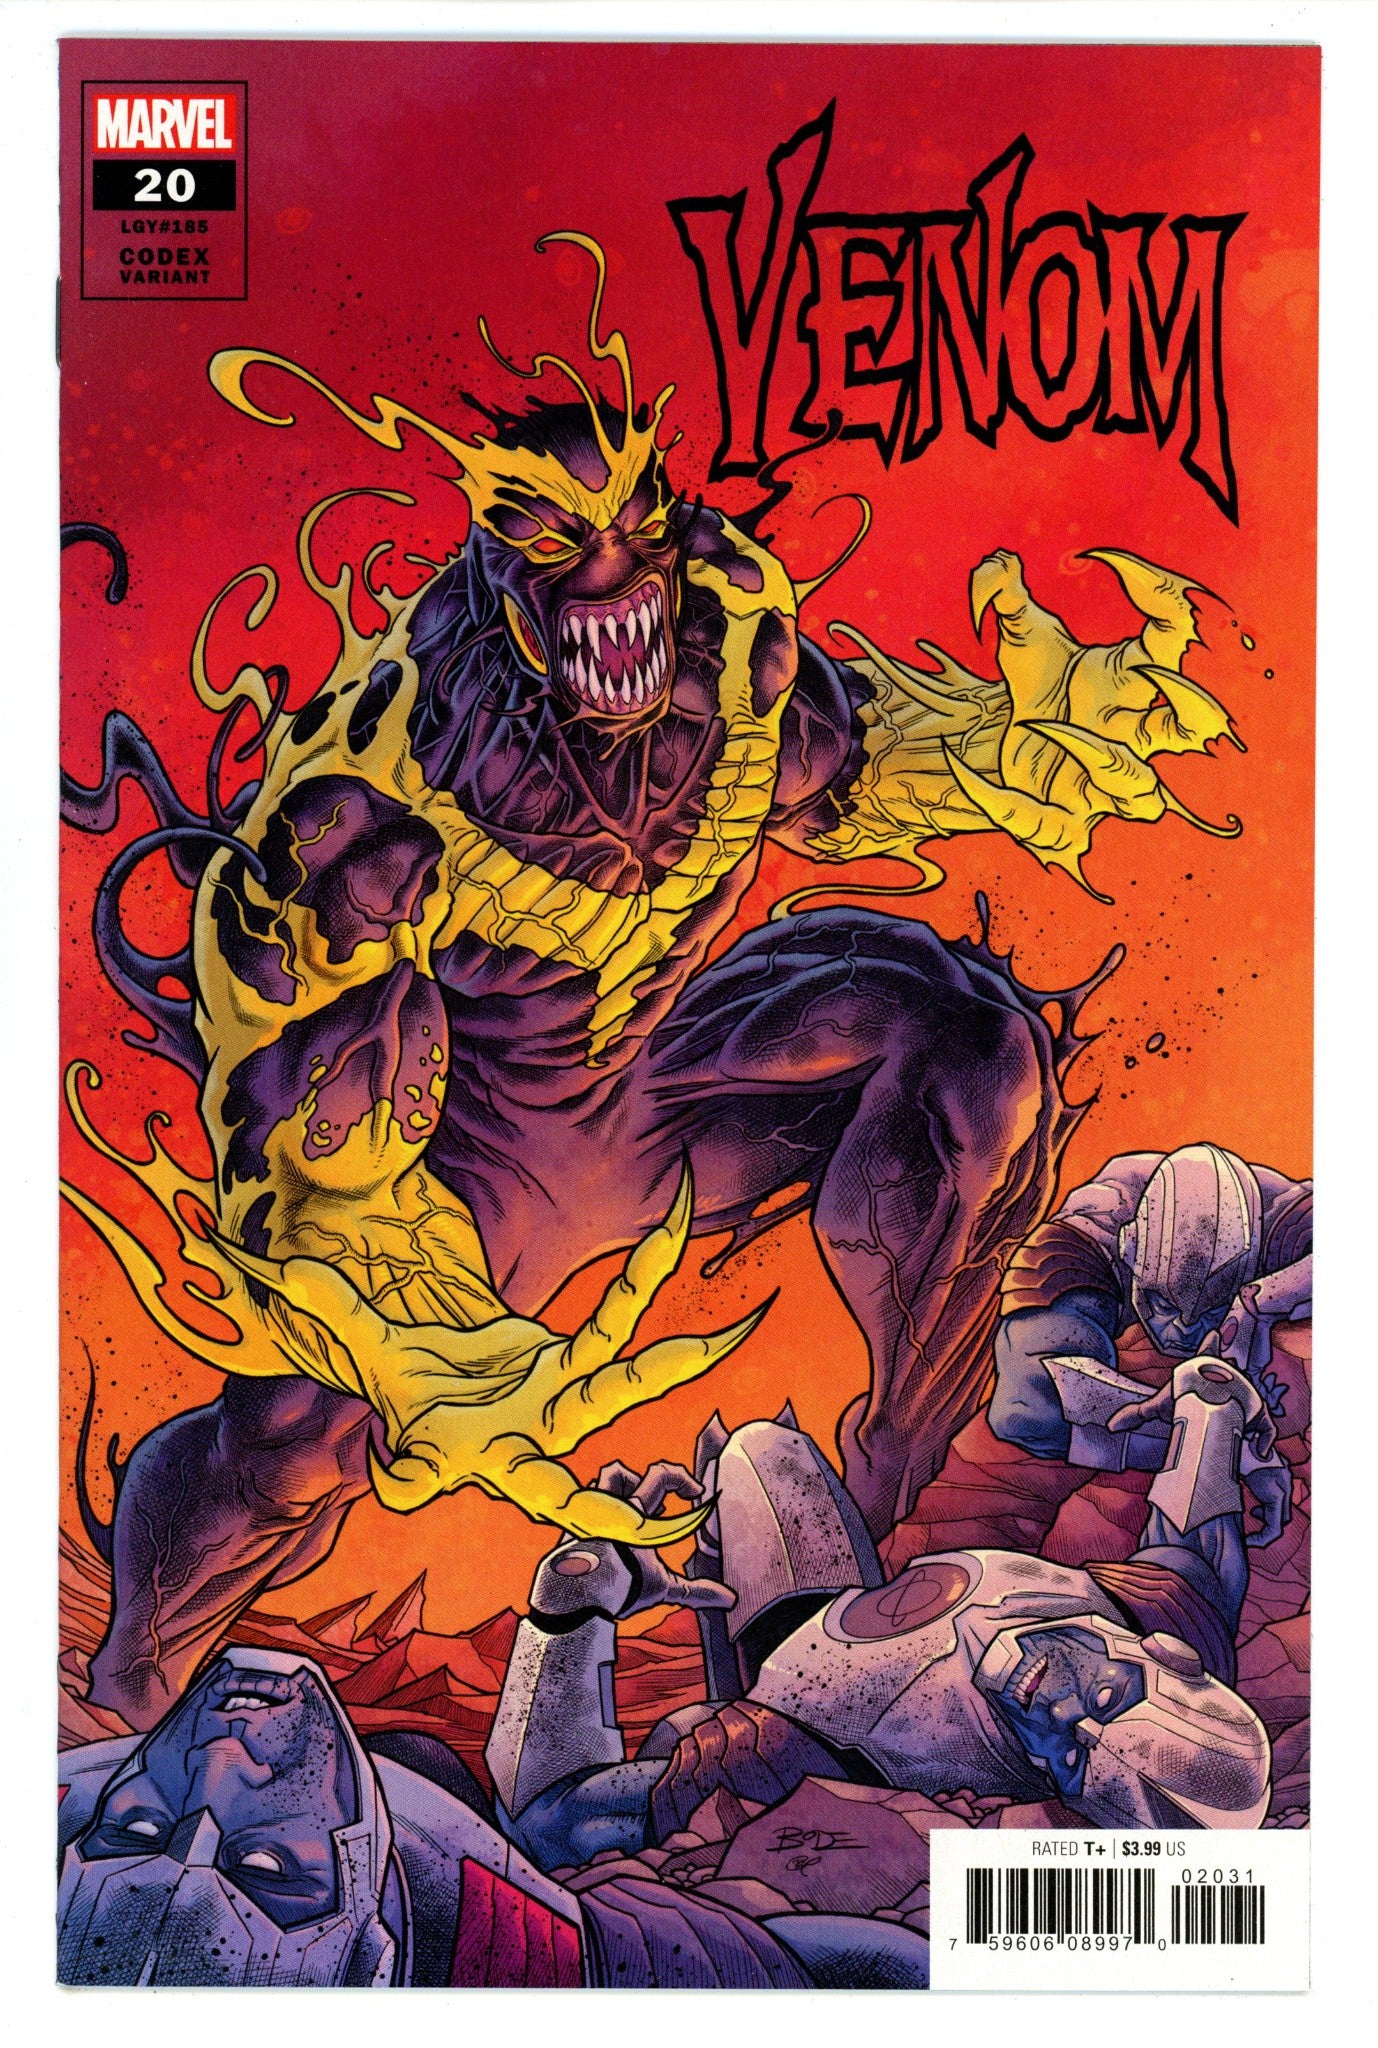 Venom Vol 4 20 (185) High Grade (2020) Sleeper Variant 